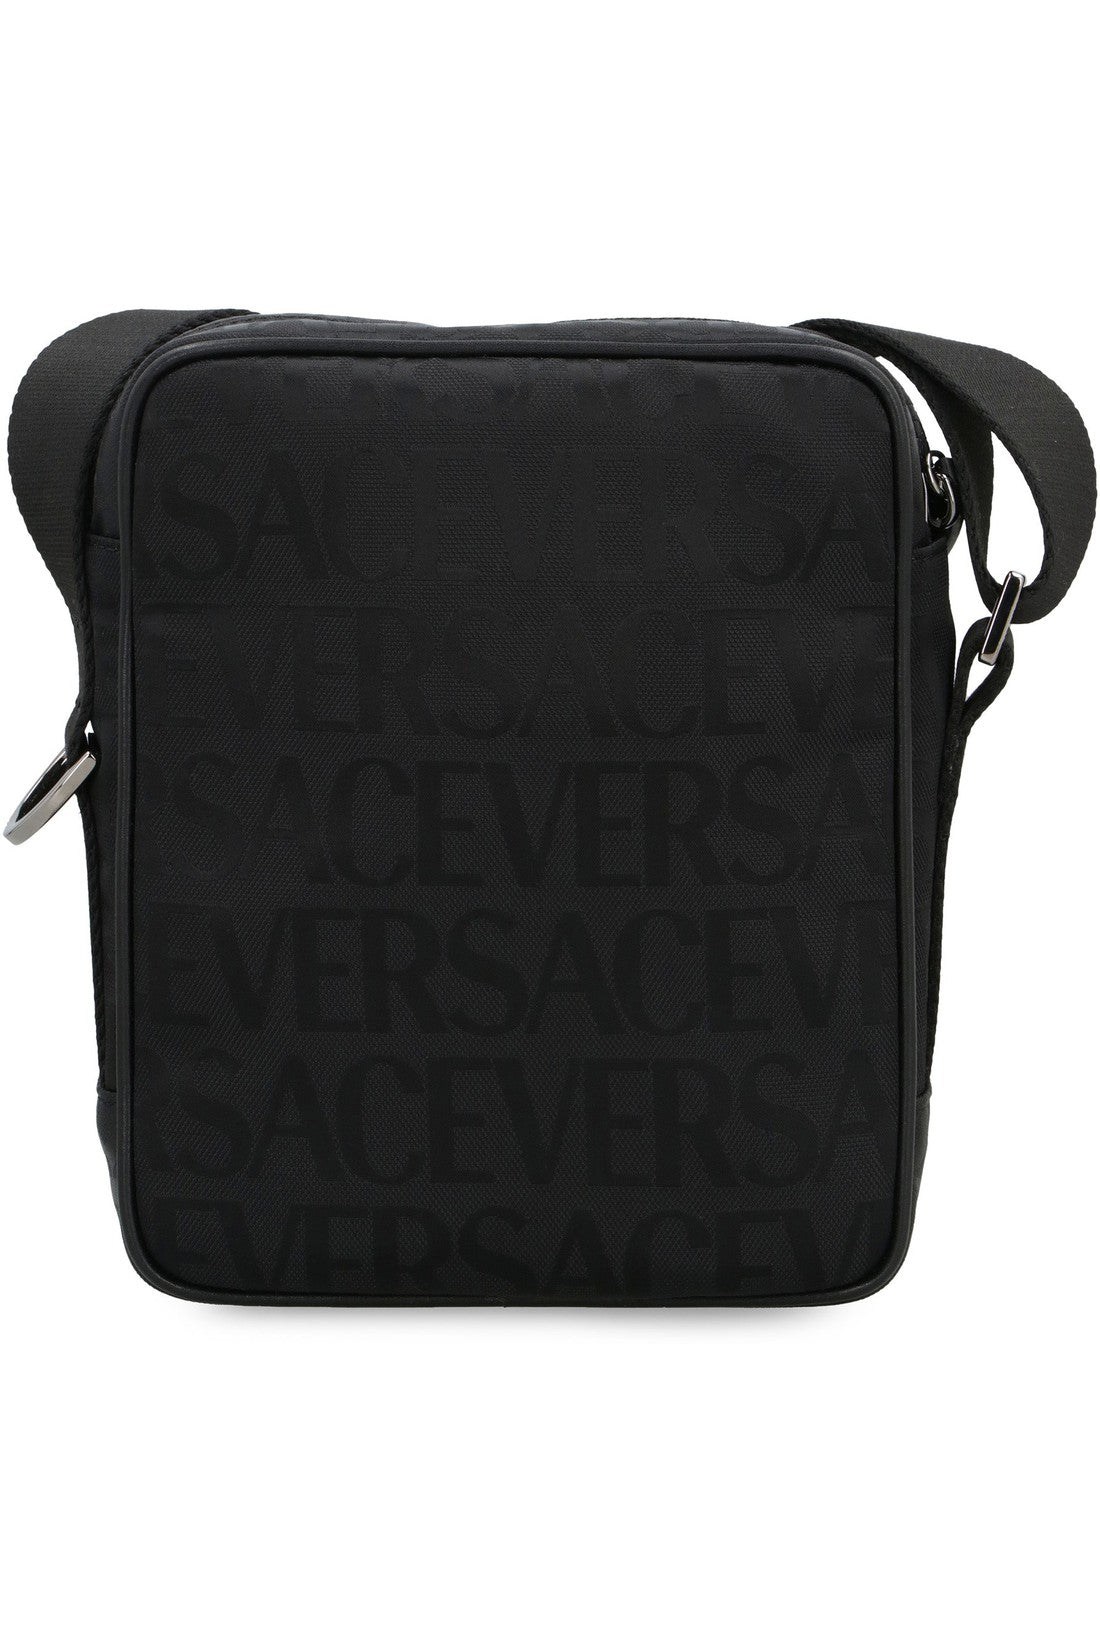 Versace-OUTLET-SALE-Canvas messenger bag-ARCHIVIST